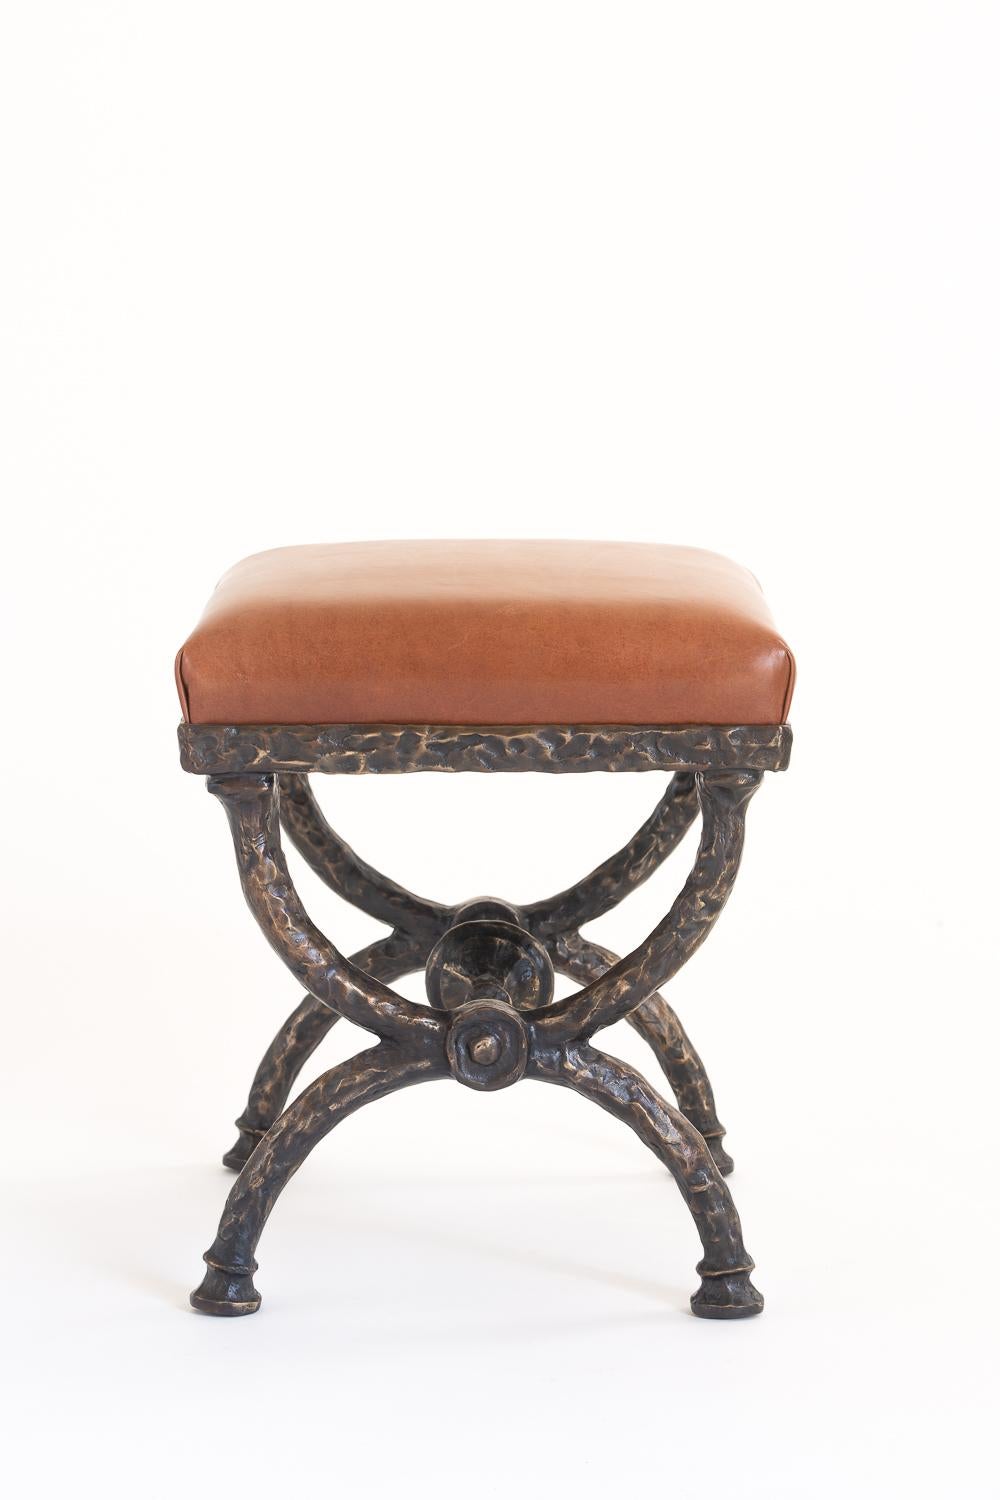 Ce tabouret en bronze sculpté est forgé à la main et présenté avec un siège en cuir brun ou noir. Chaque pièce est numérotée et estampillée. Tailles et finitions personnalisées disponibles.